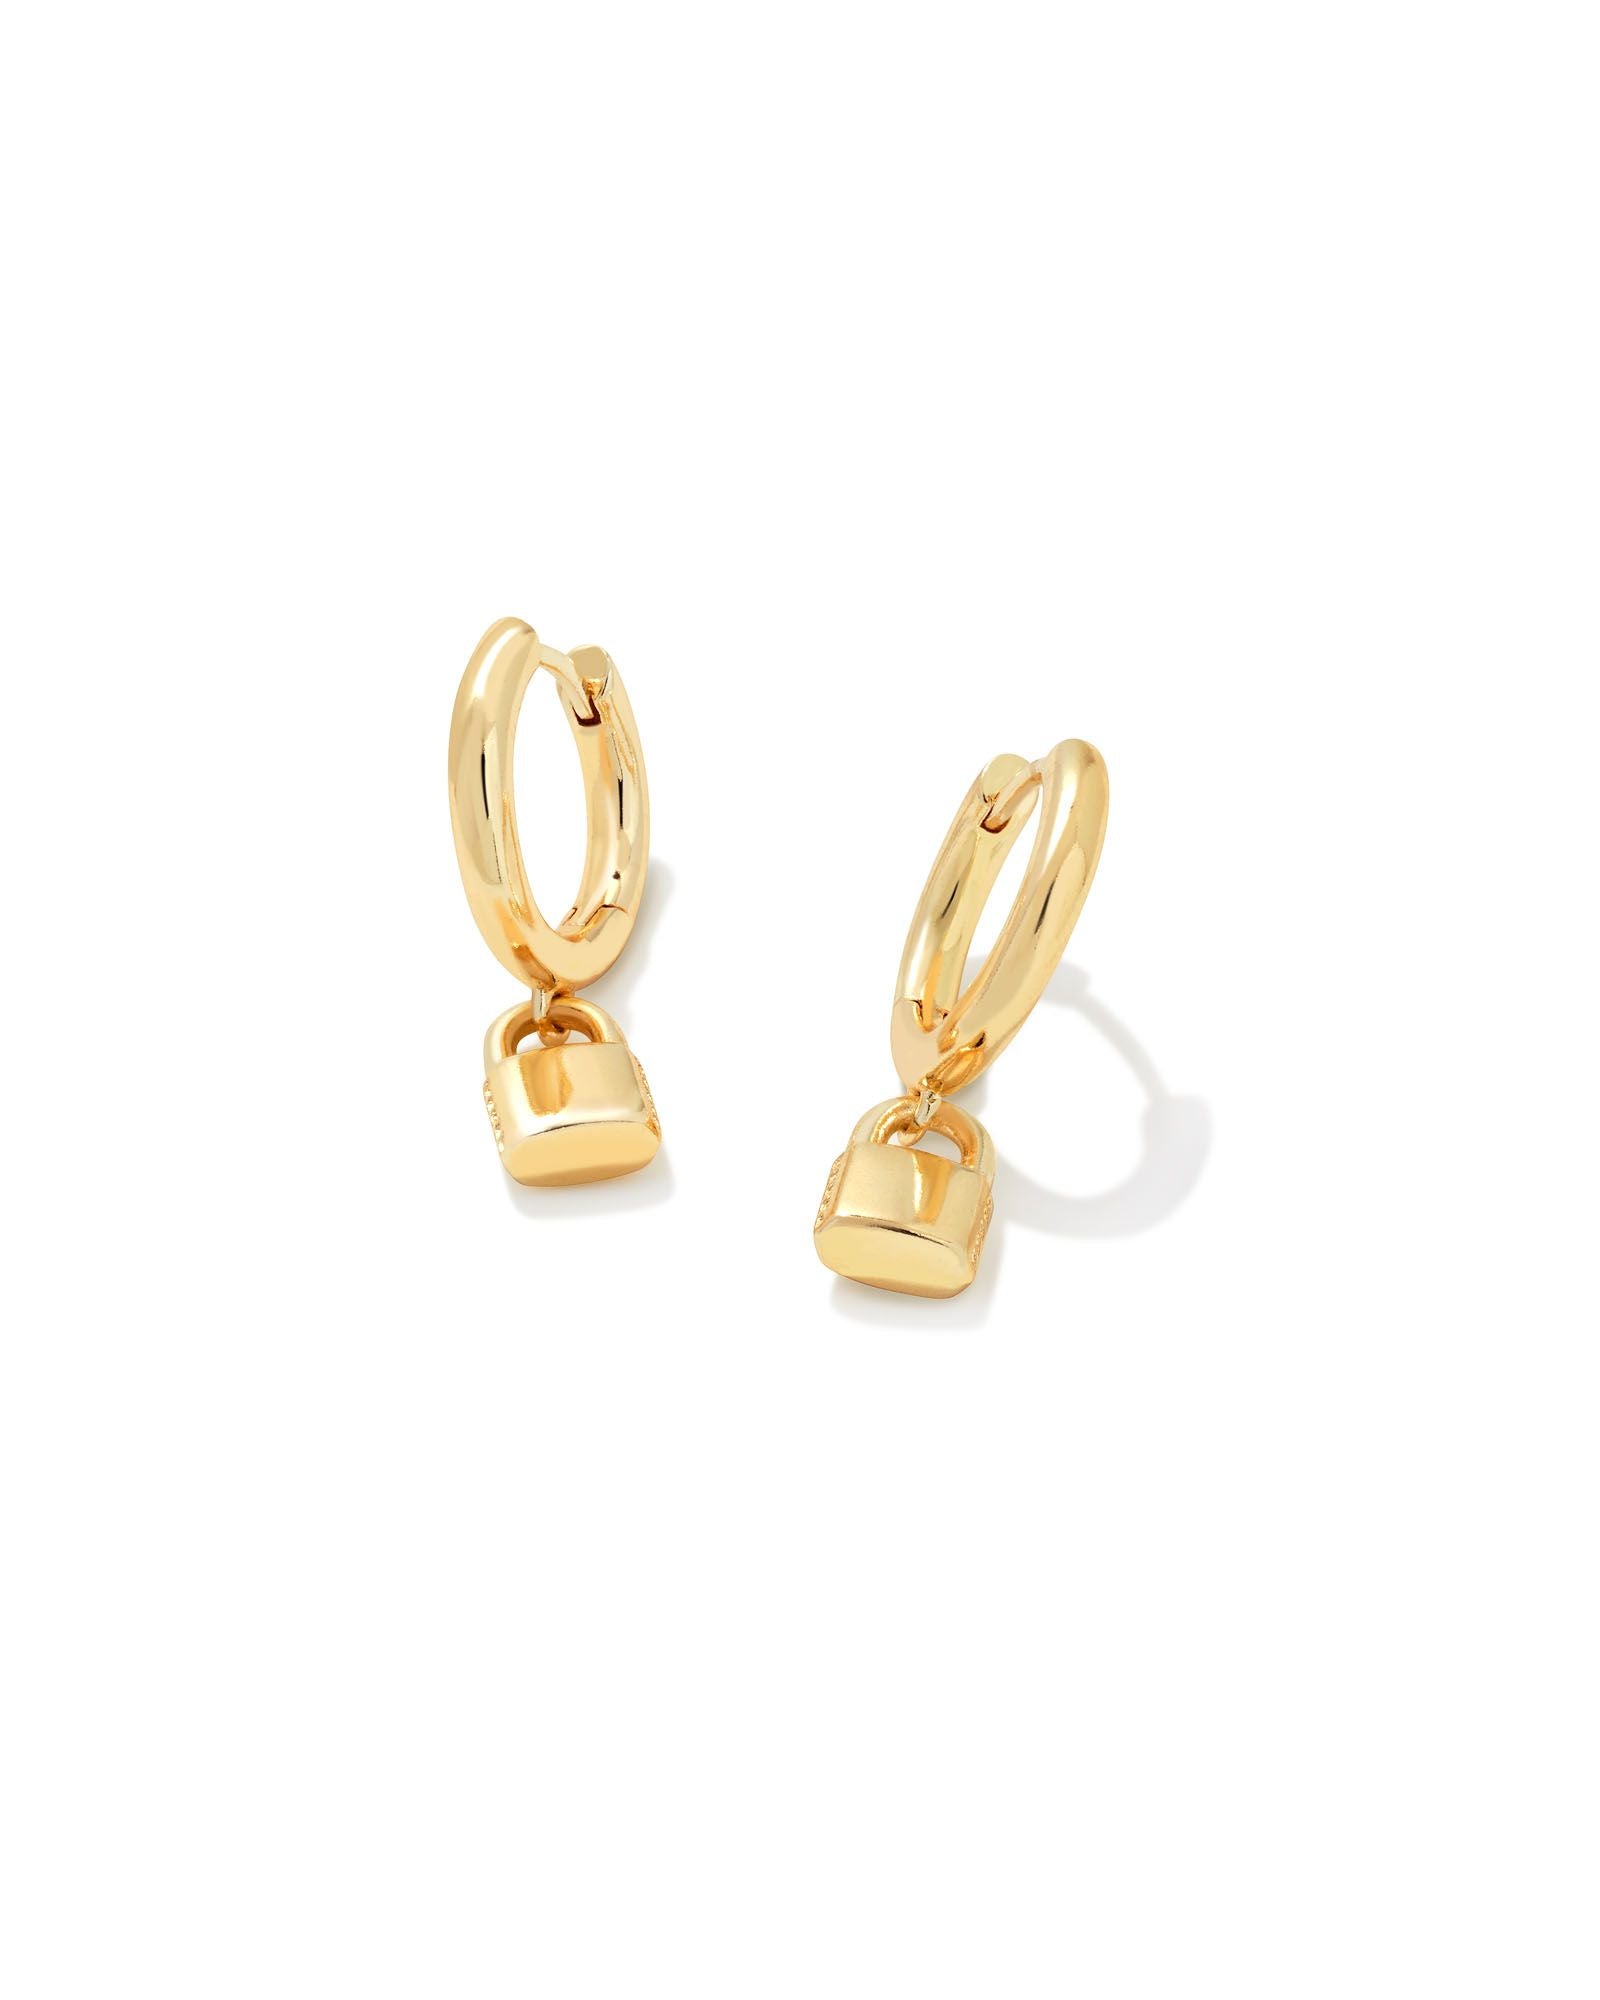 Kendra Scott Jess Lock Huggie Earrings Gold Metal-Earrings-Kendra Scott-E1992GLD-The Twisted Chandelier